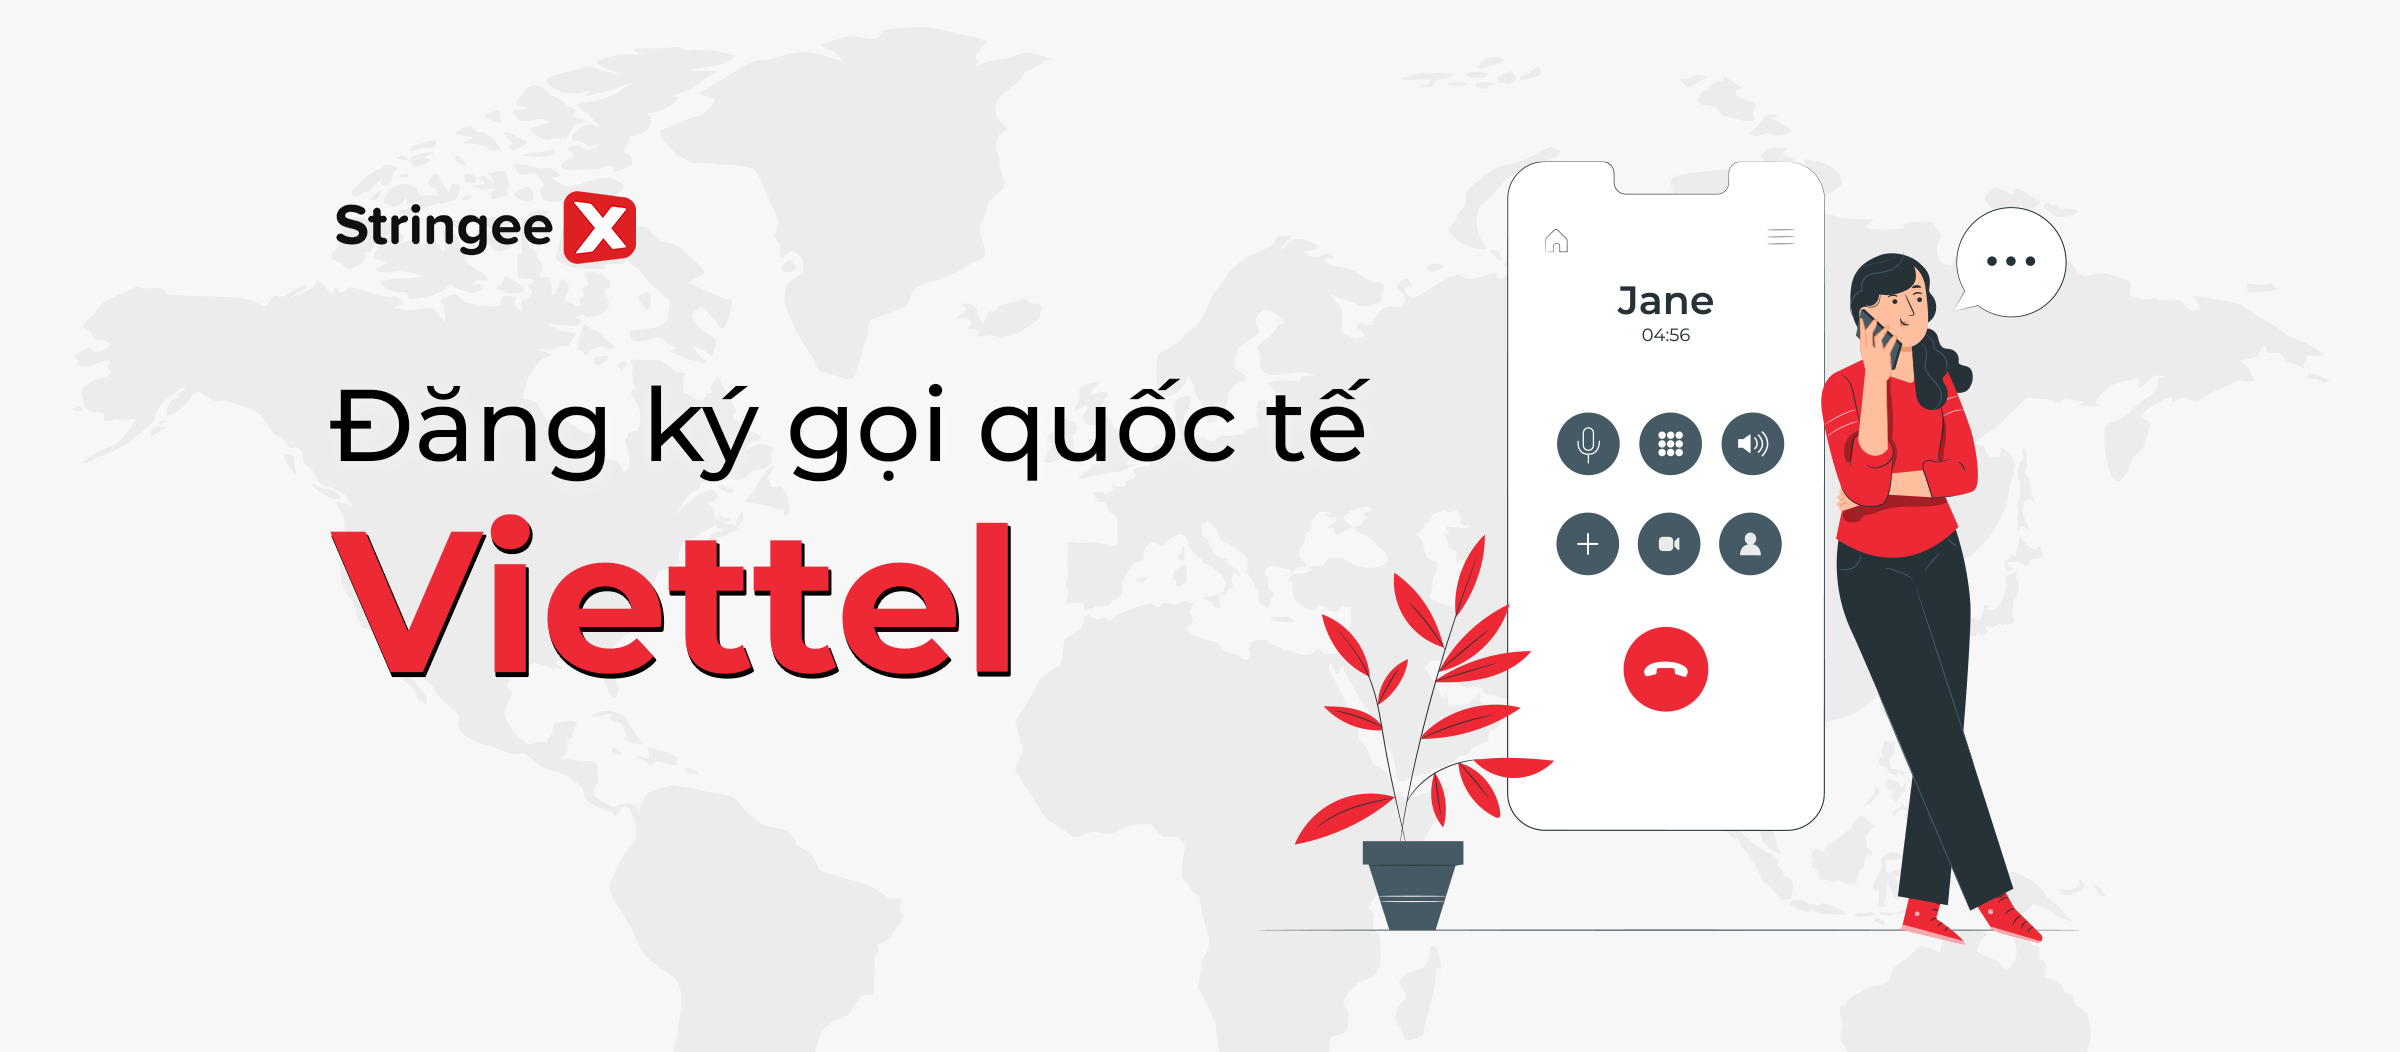 Hướng dẫn chi tiết cách đăng ký gọi quốc tế Viettel